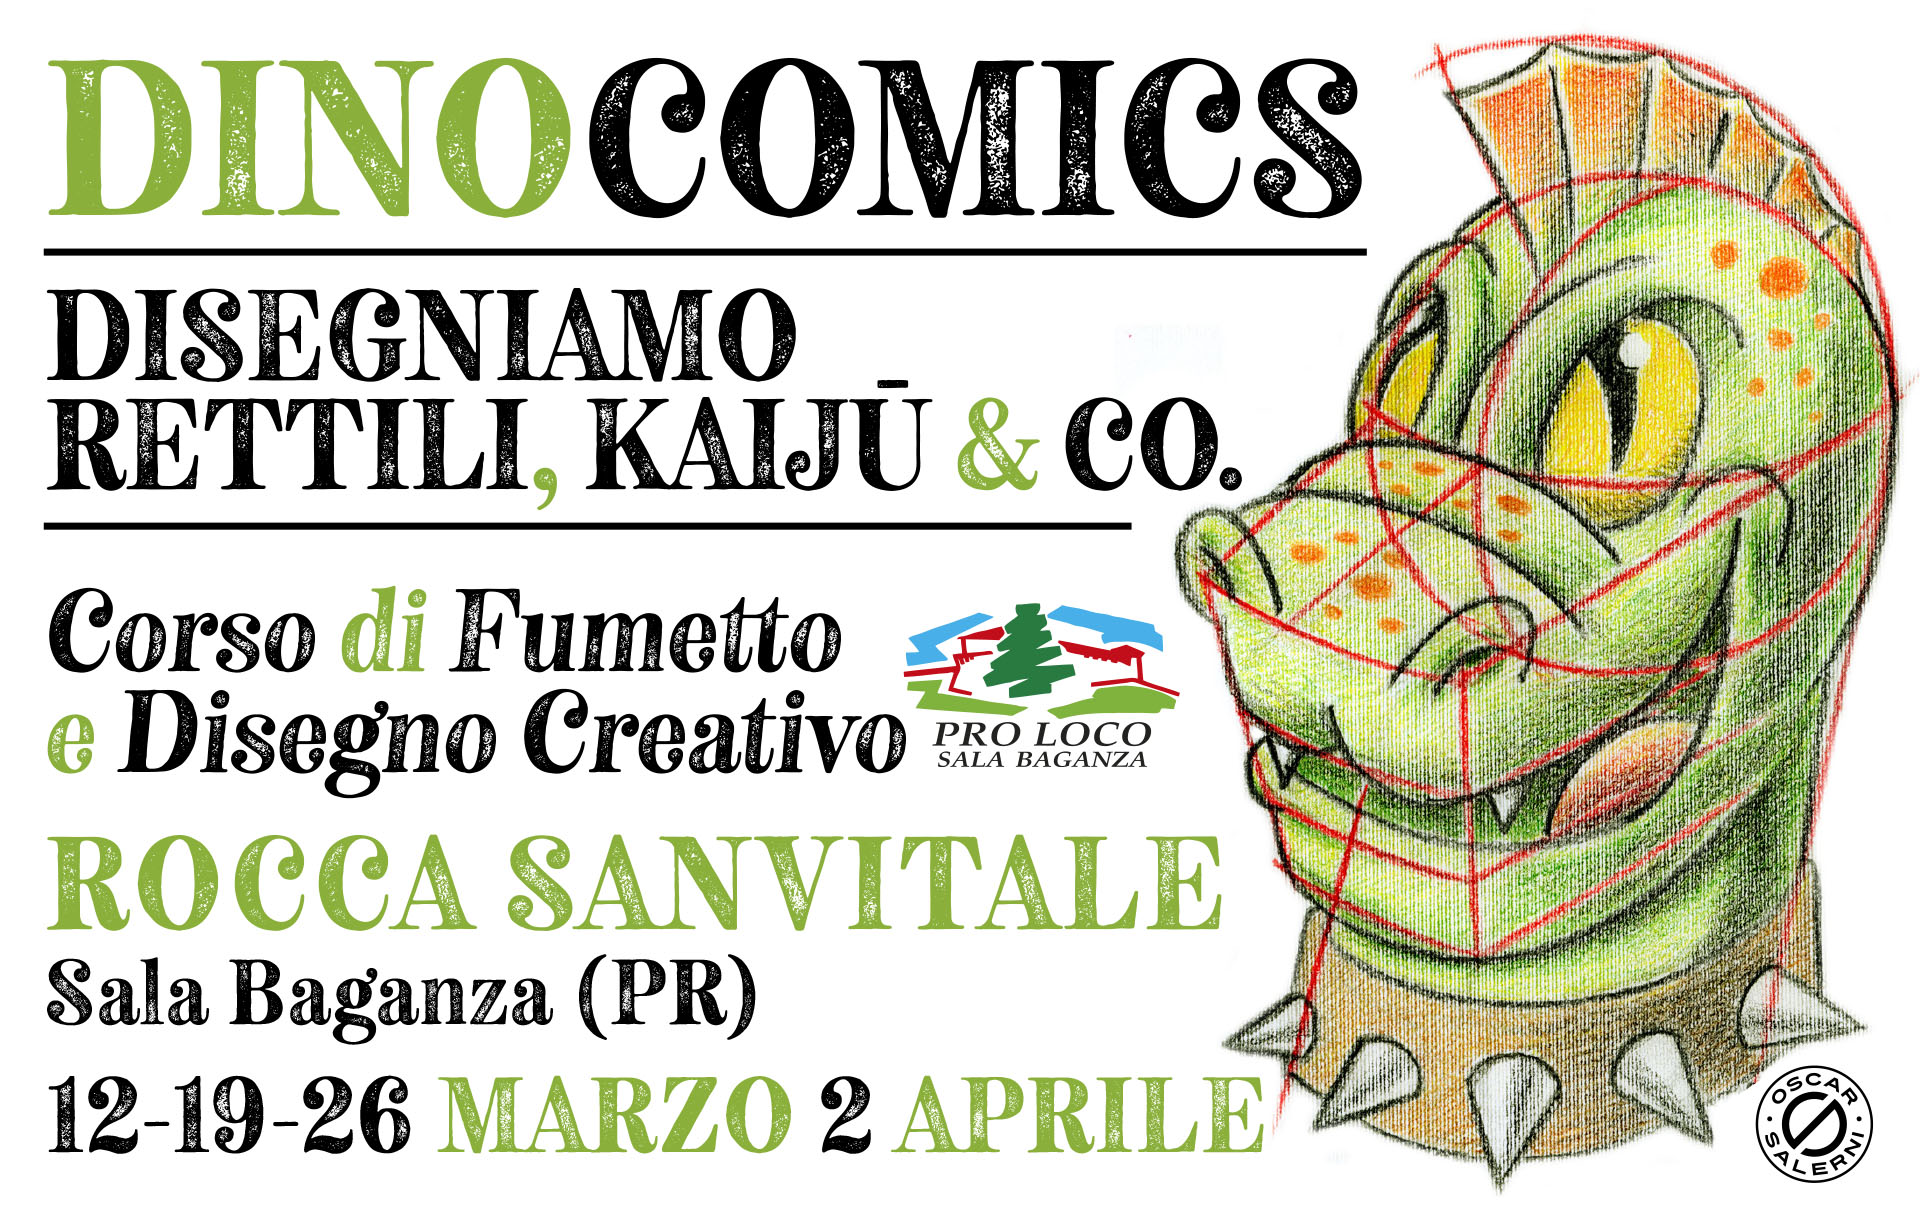 Dinocomics - Disegniamo rettili, kaiju & co. - Corso di fumetto  e disegno creativo